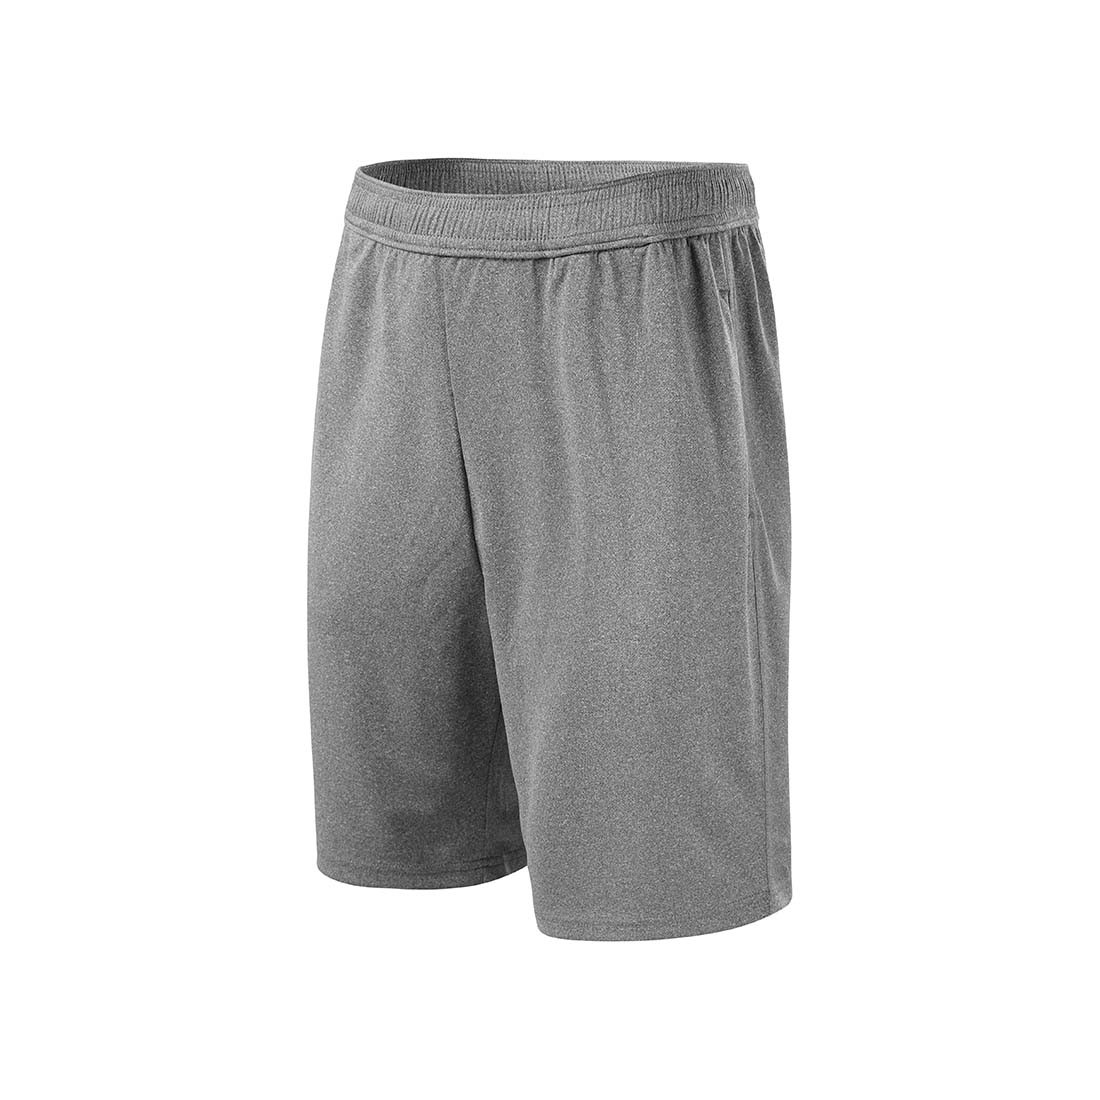 Men's Shorts - Safetywear